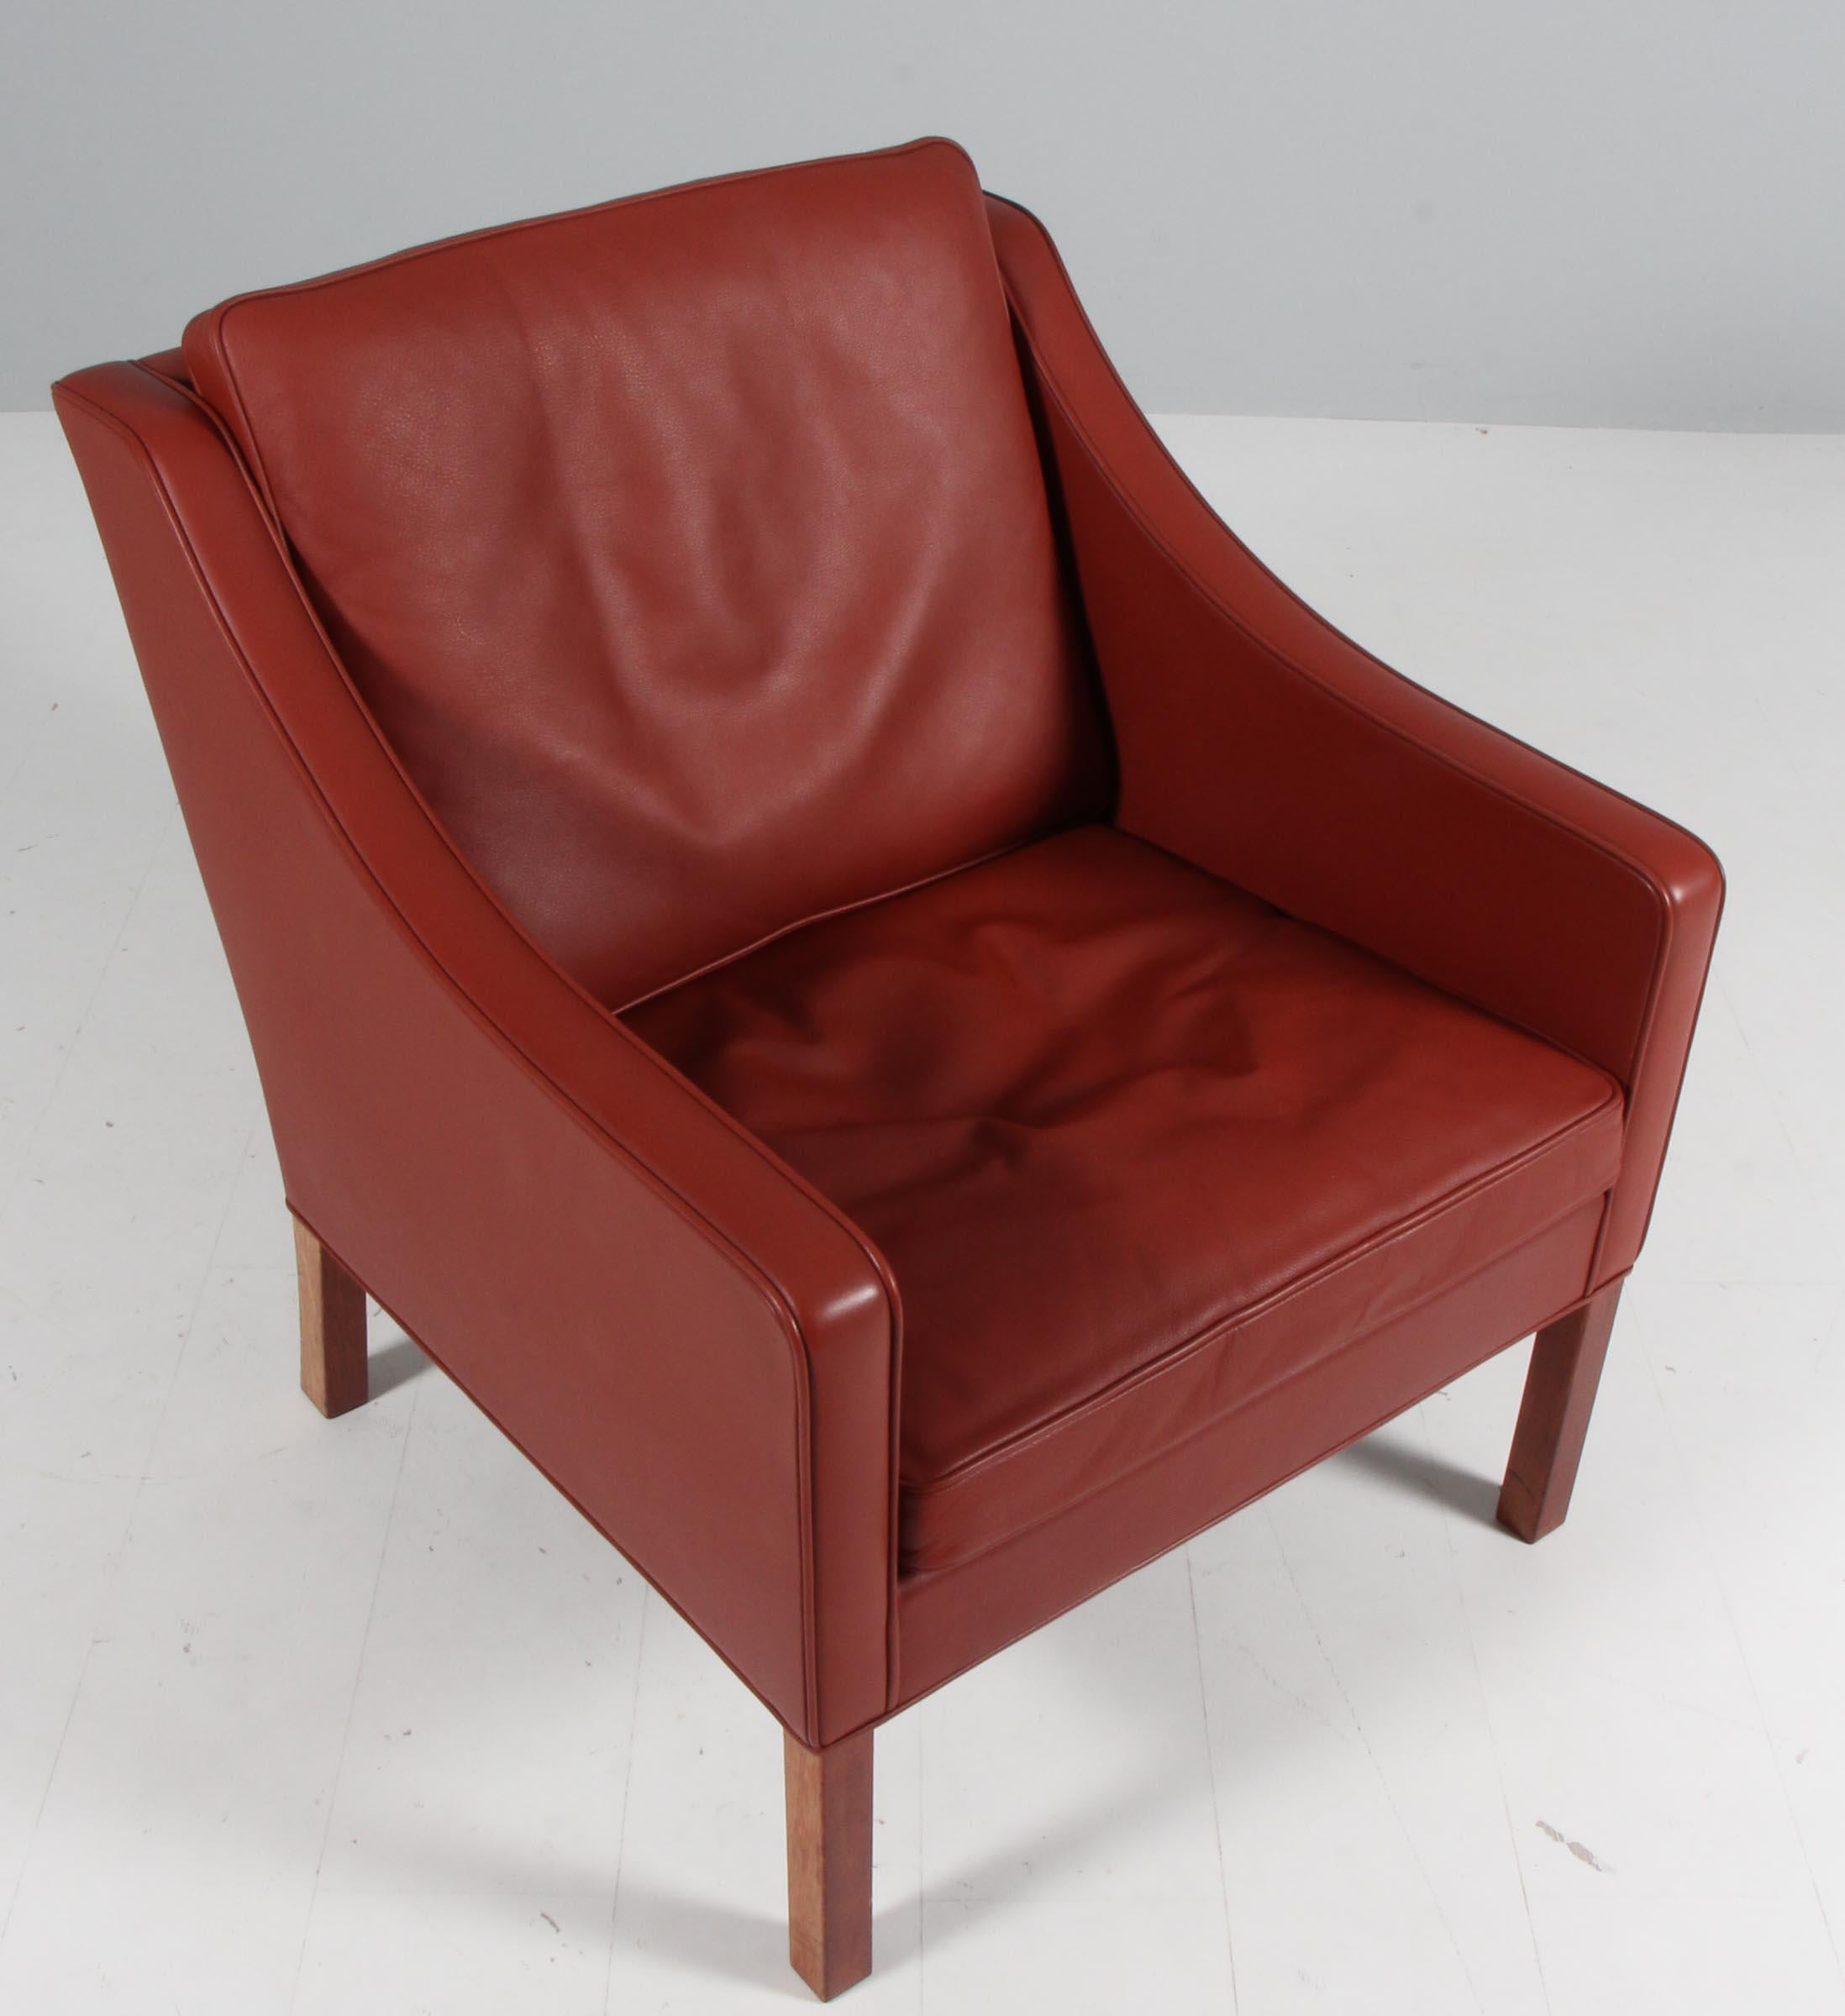 Børge Mogensen Loungesessel original gepolstert mit patiniertem roten Leder.

Beine aus Teakholz.

Modell 2207, hergestellt von Fredericia furniture.